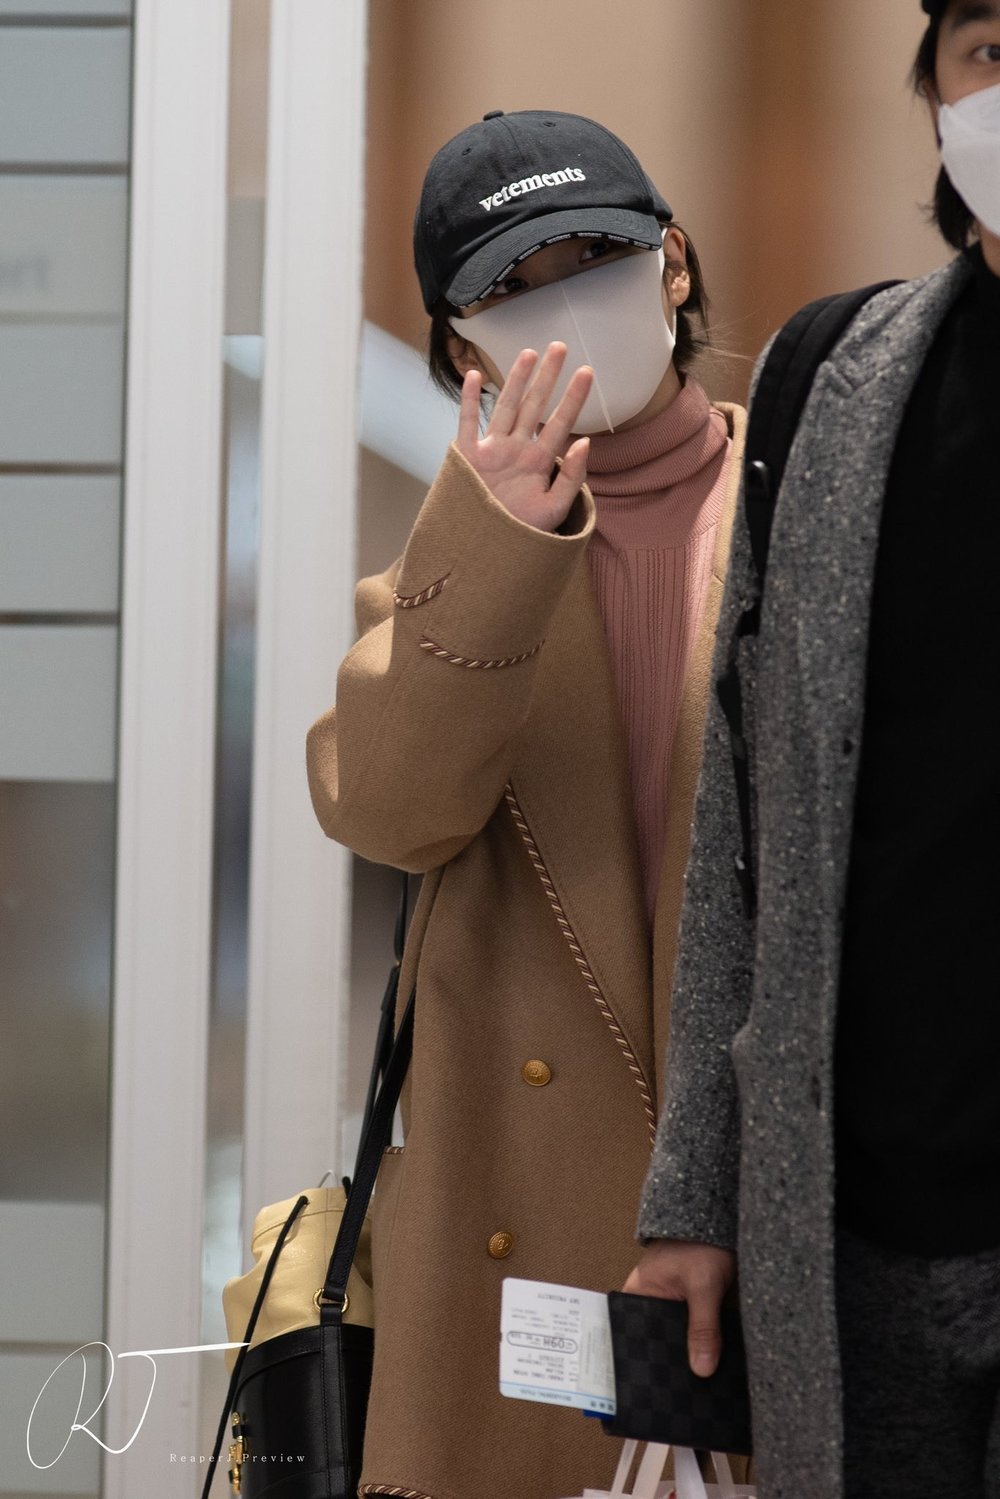  
IU diện đồ Gucci khi xuất hiện tại sân bay Hàn Quốc.